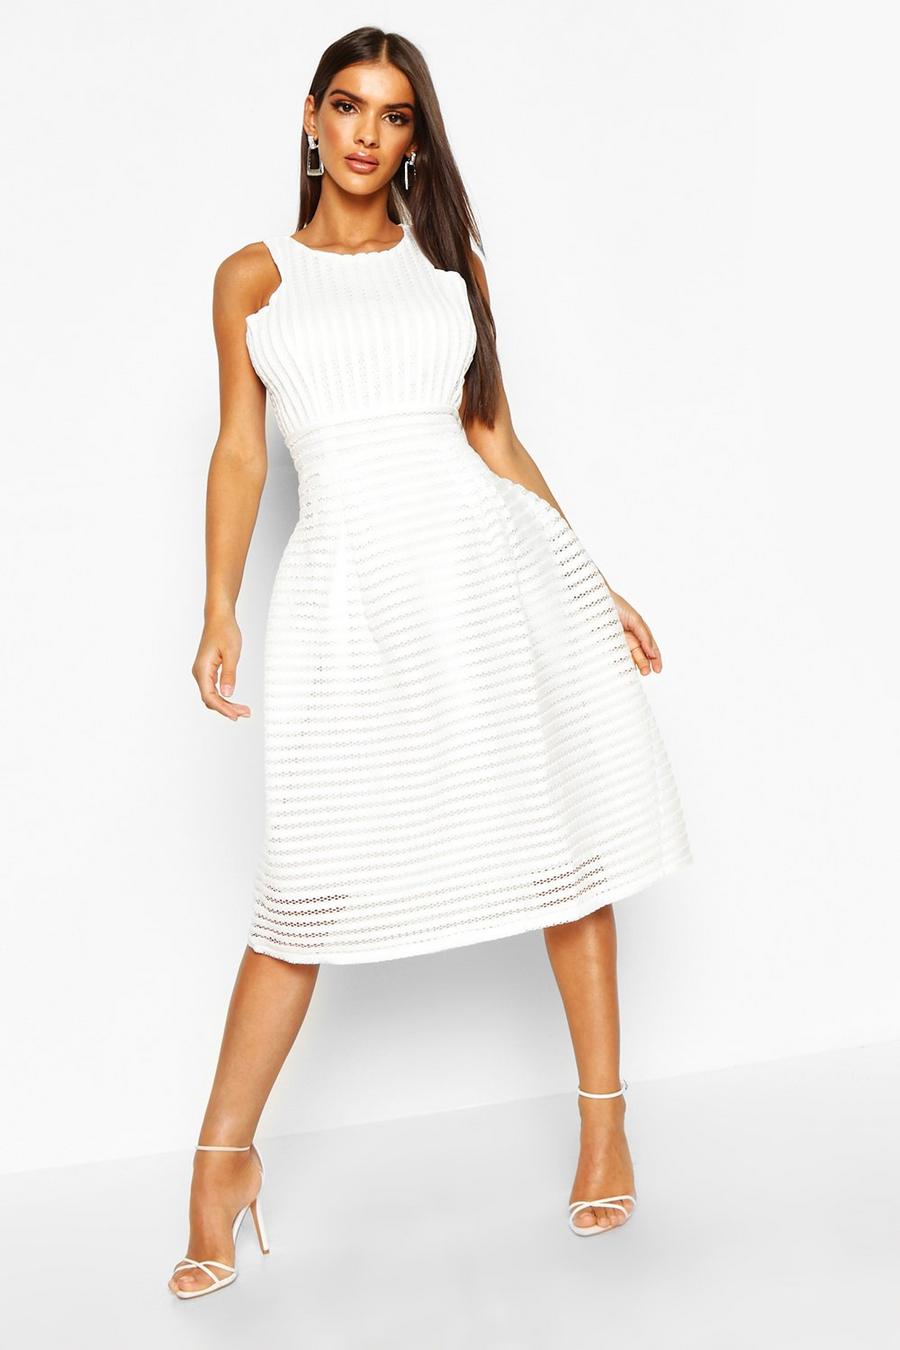 Ivory white Boutique Panelled Full Skirt Skater Dress